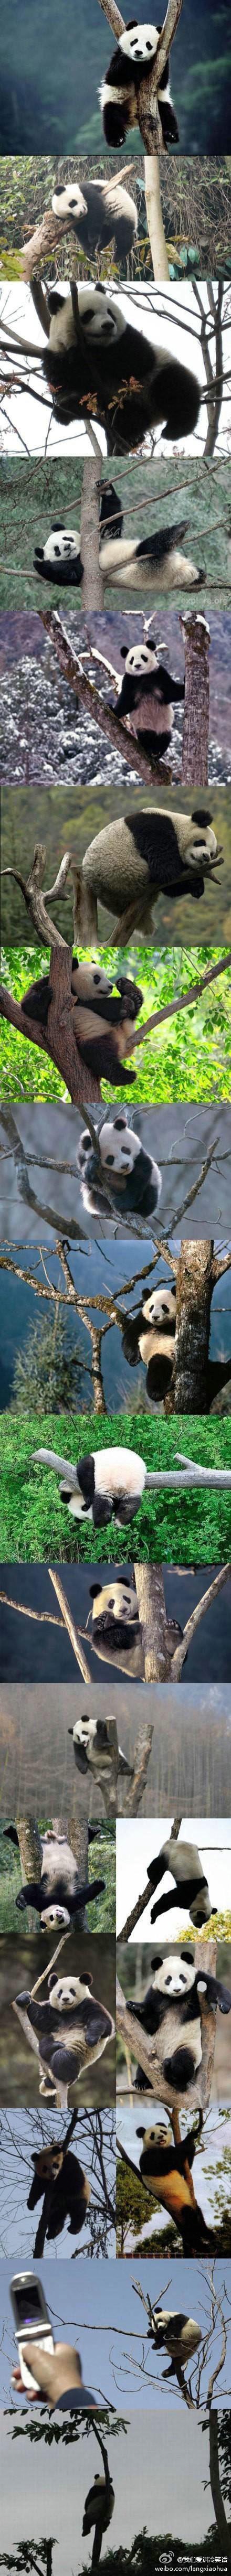 【当熊猫遇到树】国宝兄，你屁屁疼不~真是各种萌姿啊有木有